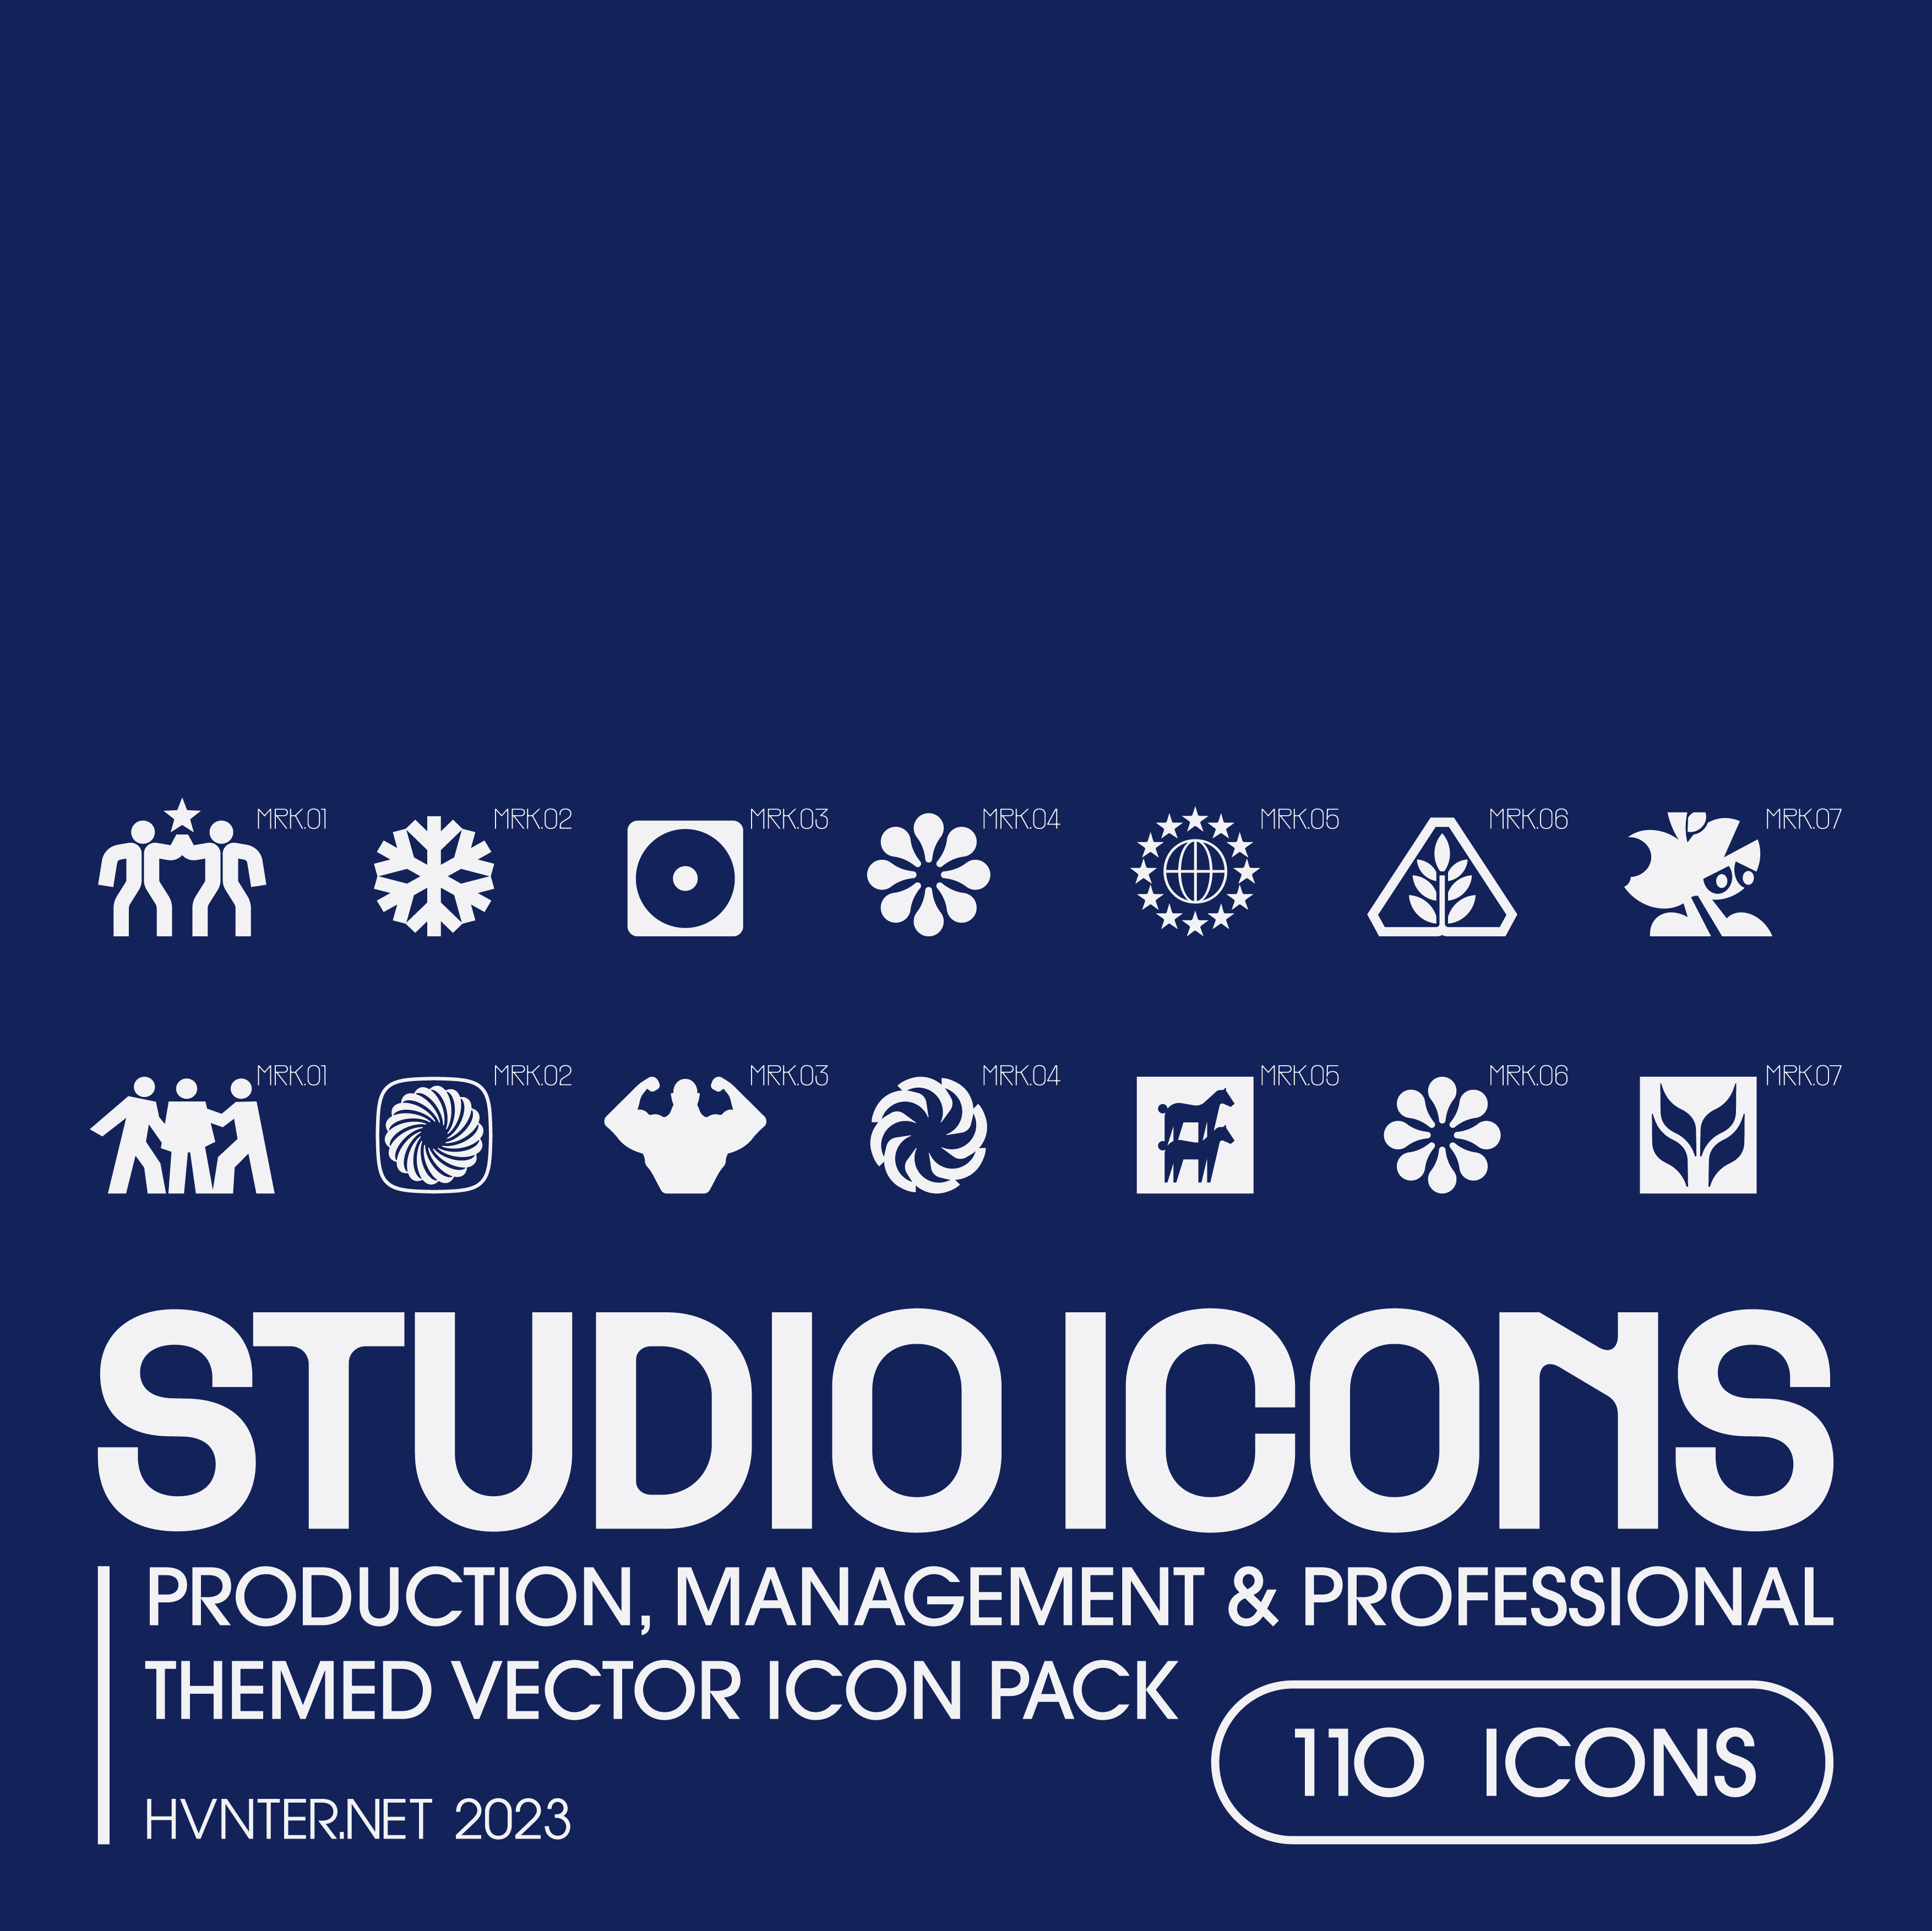 Studio Icons